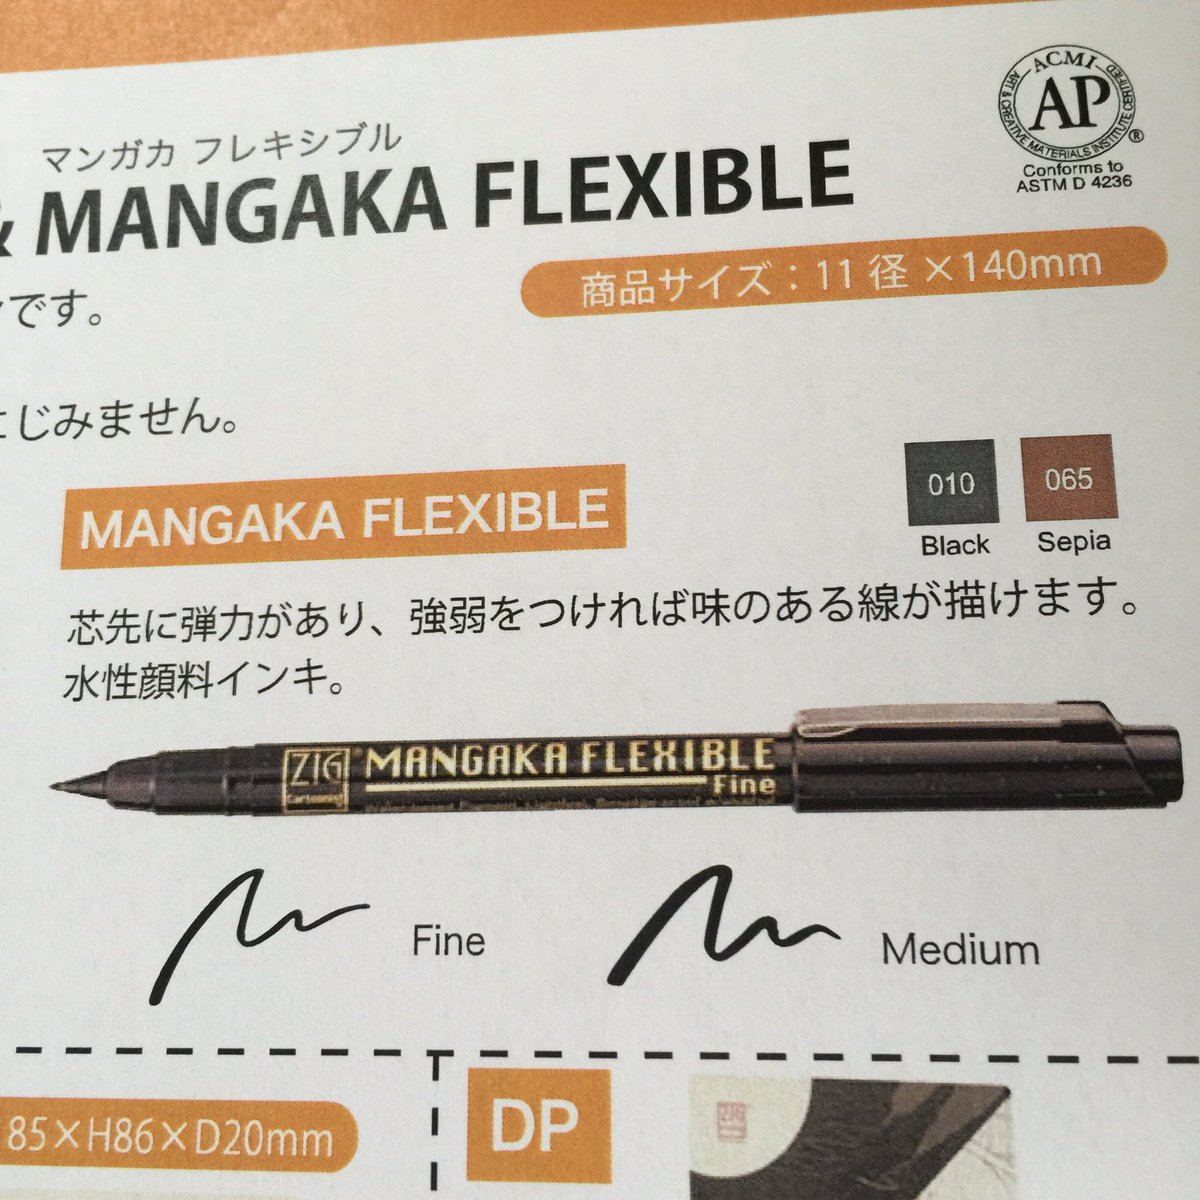 はちっこ A Twitteren 習字用品で有名な呉竹から イラスト用の耐水性ペンが出てるそうですよ 筆そのものではないけど筆タッチで書けるペン 上からカラーペン重ねても大丈夫 150円ぐらいで良心的 カラーペンも筆タイプで充実してた